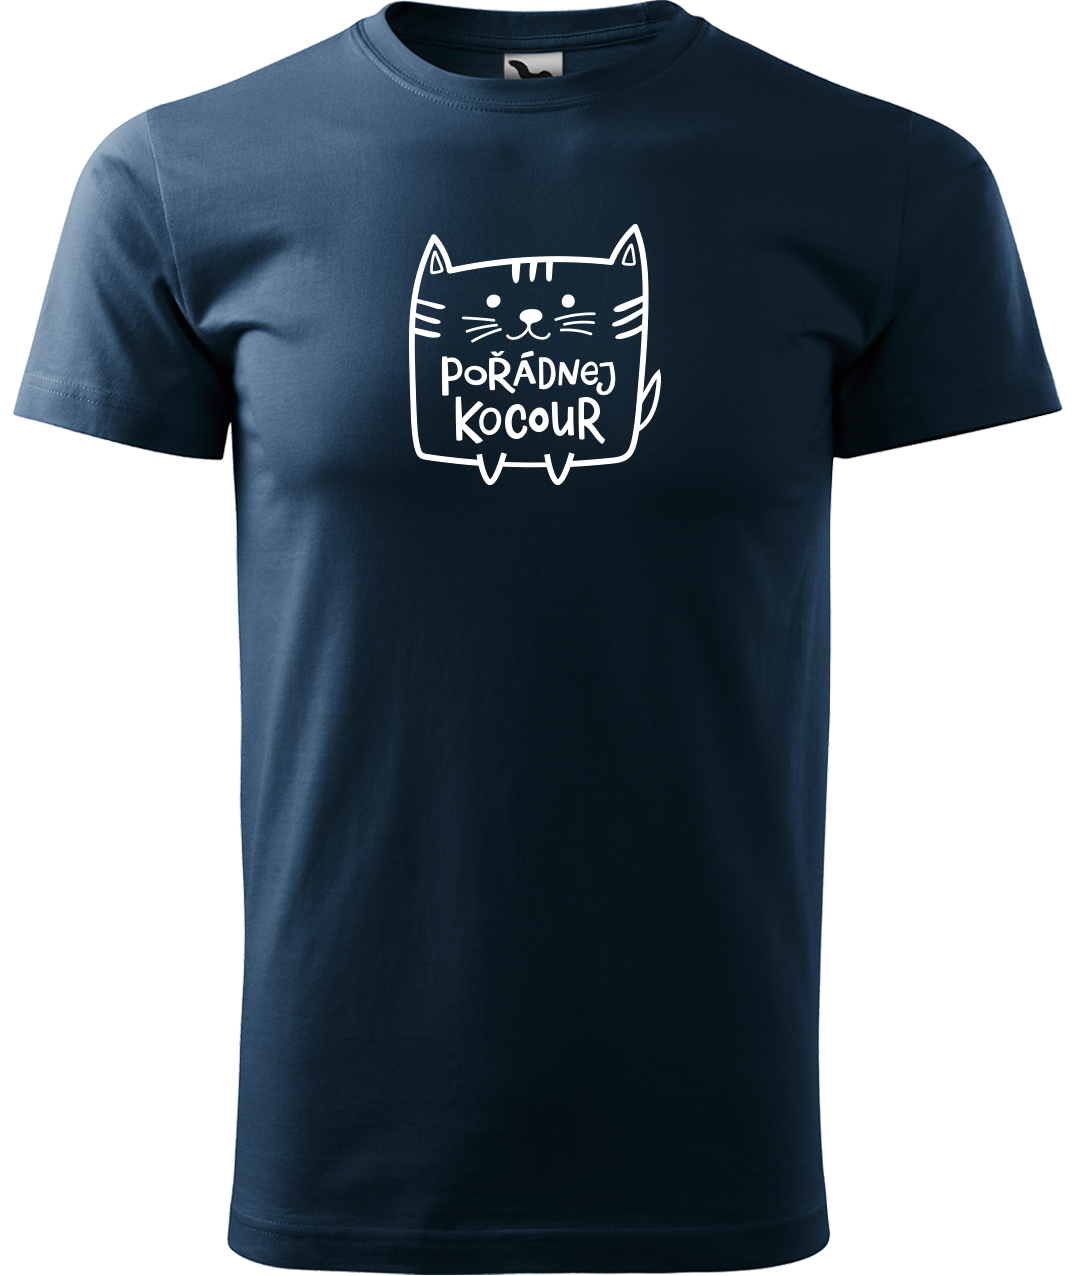 Pánské tričko s kočkou - Pořádnej kocour Velikost: M, Barva: Námořní modrá (02)